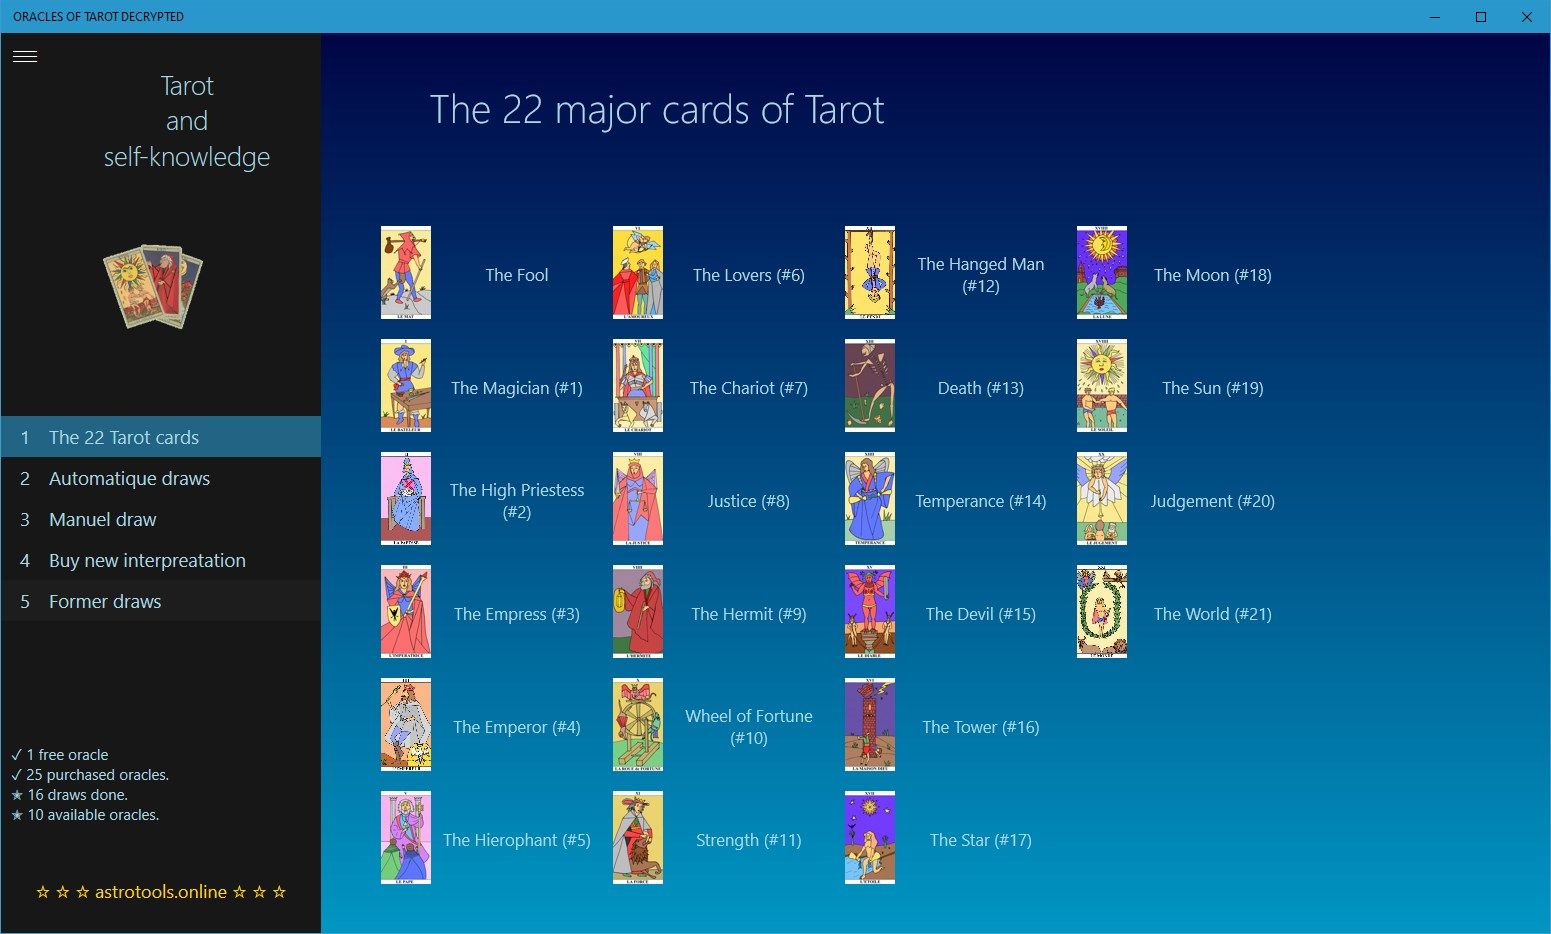 The 22 major cards of Tarot